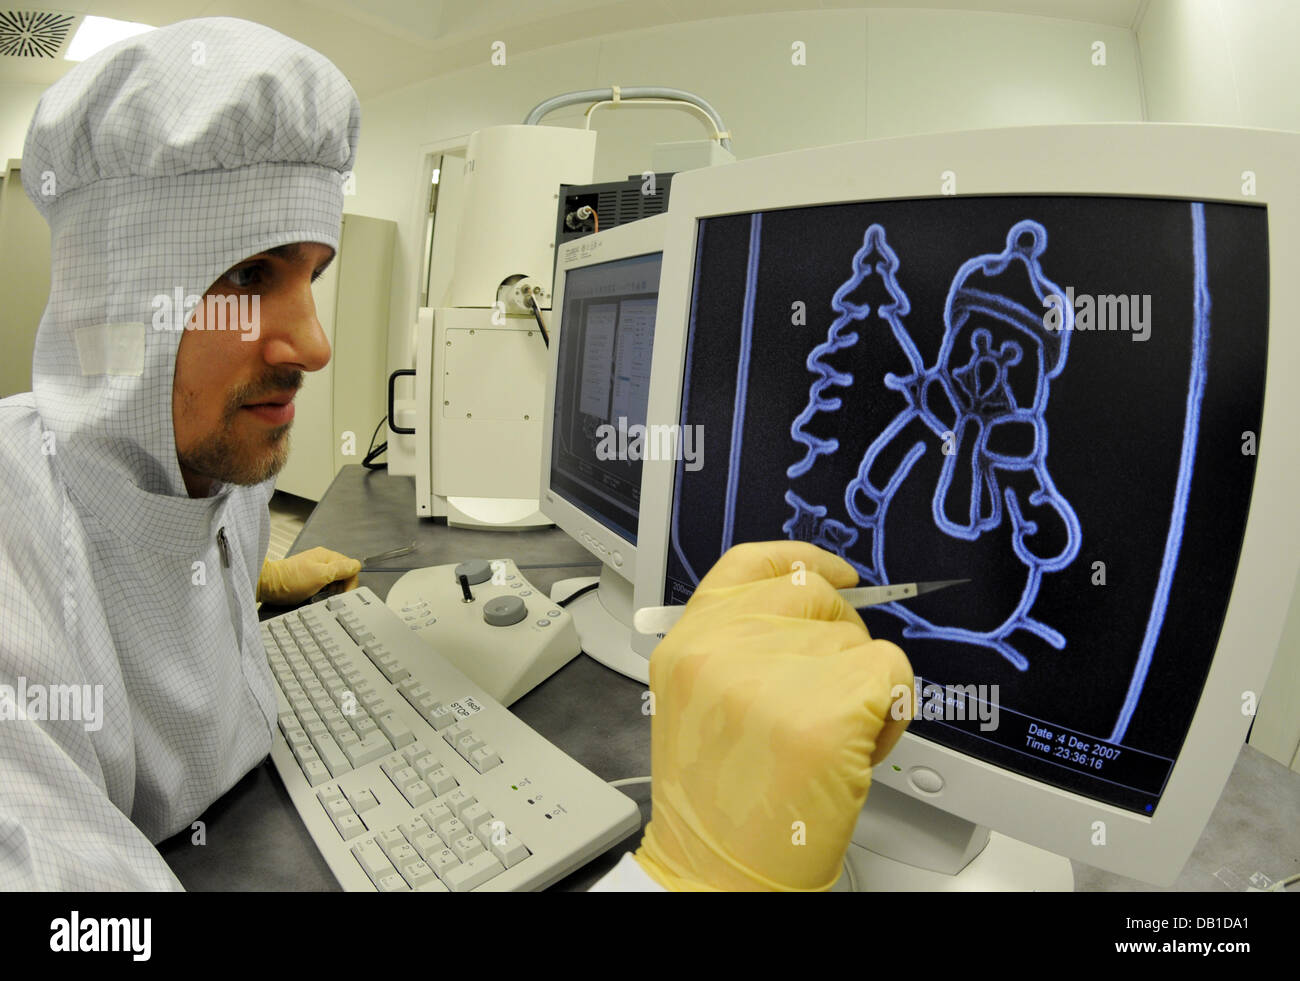 Daniel Neumaier de la Universidad de Regensburg, muestra la imagen de un muñeco de nieve que está grabado en el "Calendario de Adviento más pequeño del mundo" en Regensburg, Alemania, el 11 de diciembre de 2007. El calendario está grabado en el arseniuro de galio y es de 12*8 micrómetros. No es visible sin un microscopio especial. Foto: ARMIN WEIGEL Foto de stock